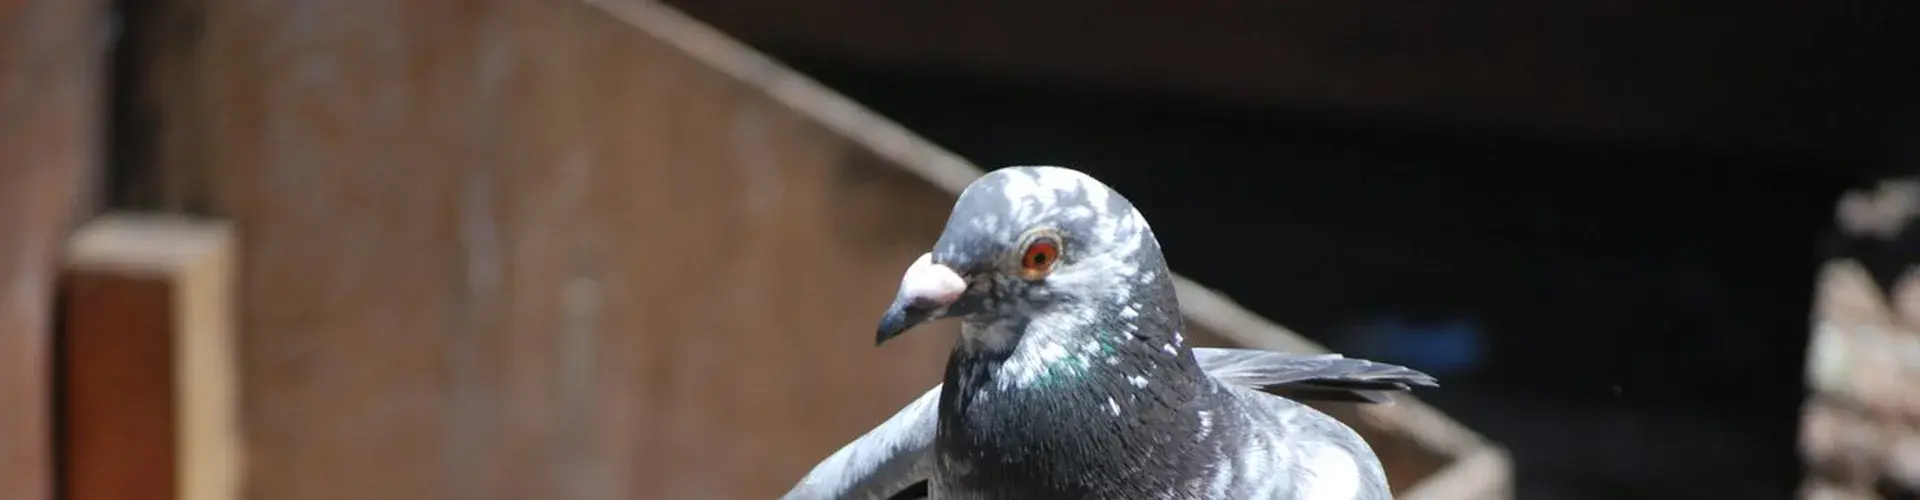 Homing pigeon (Credit: Five Furlongs)